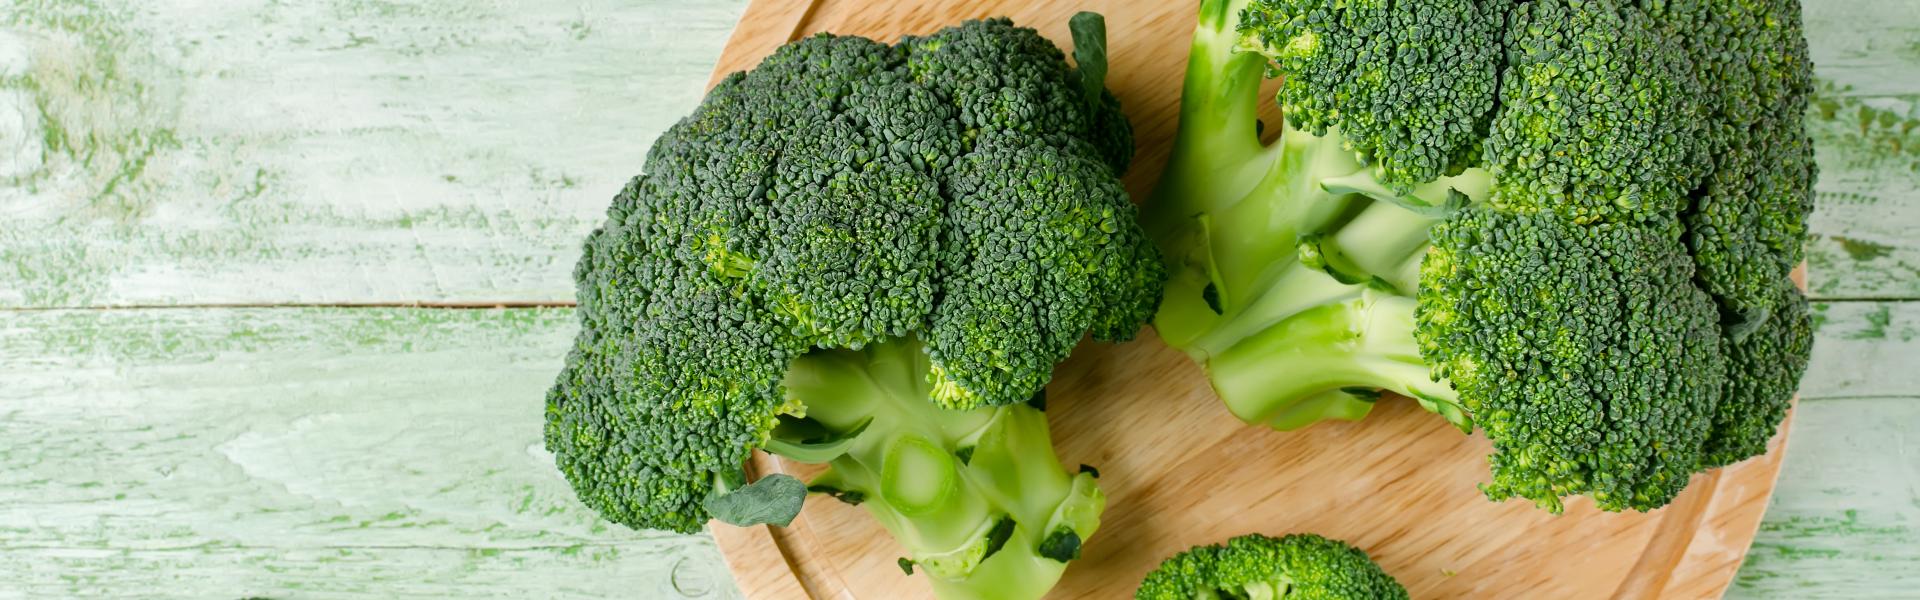 Broccoli op een houte plank